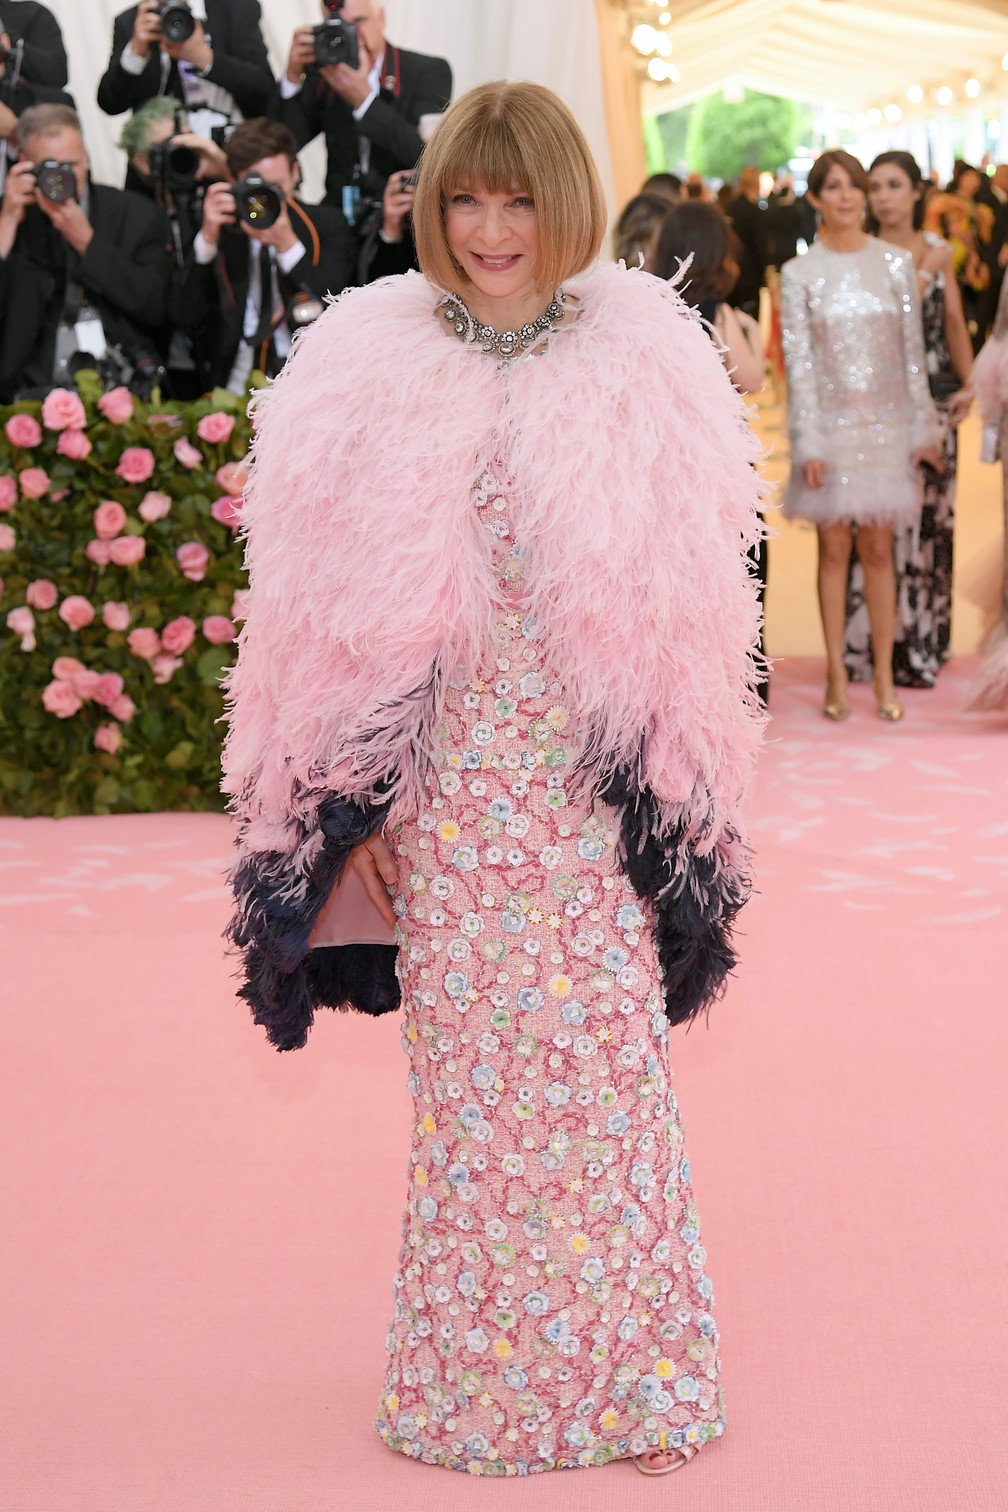 Anna Wintour, diretora-chefe da revista Vogue americana, chega ao Baile de Gala do Met 2019, em Nova York (EUA) â€” Foto: Neilson Barnard / Getty Images North America / AFP